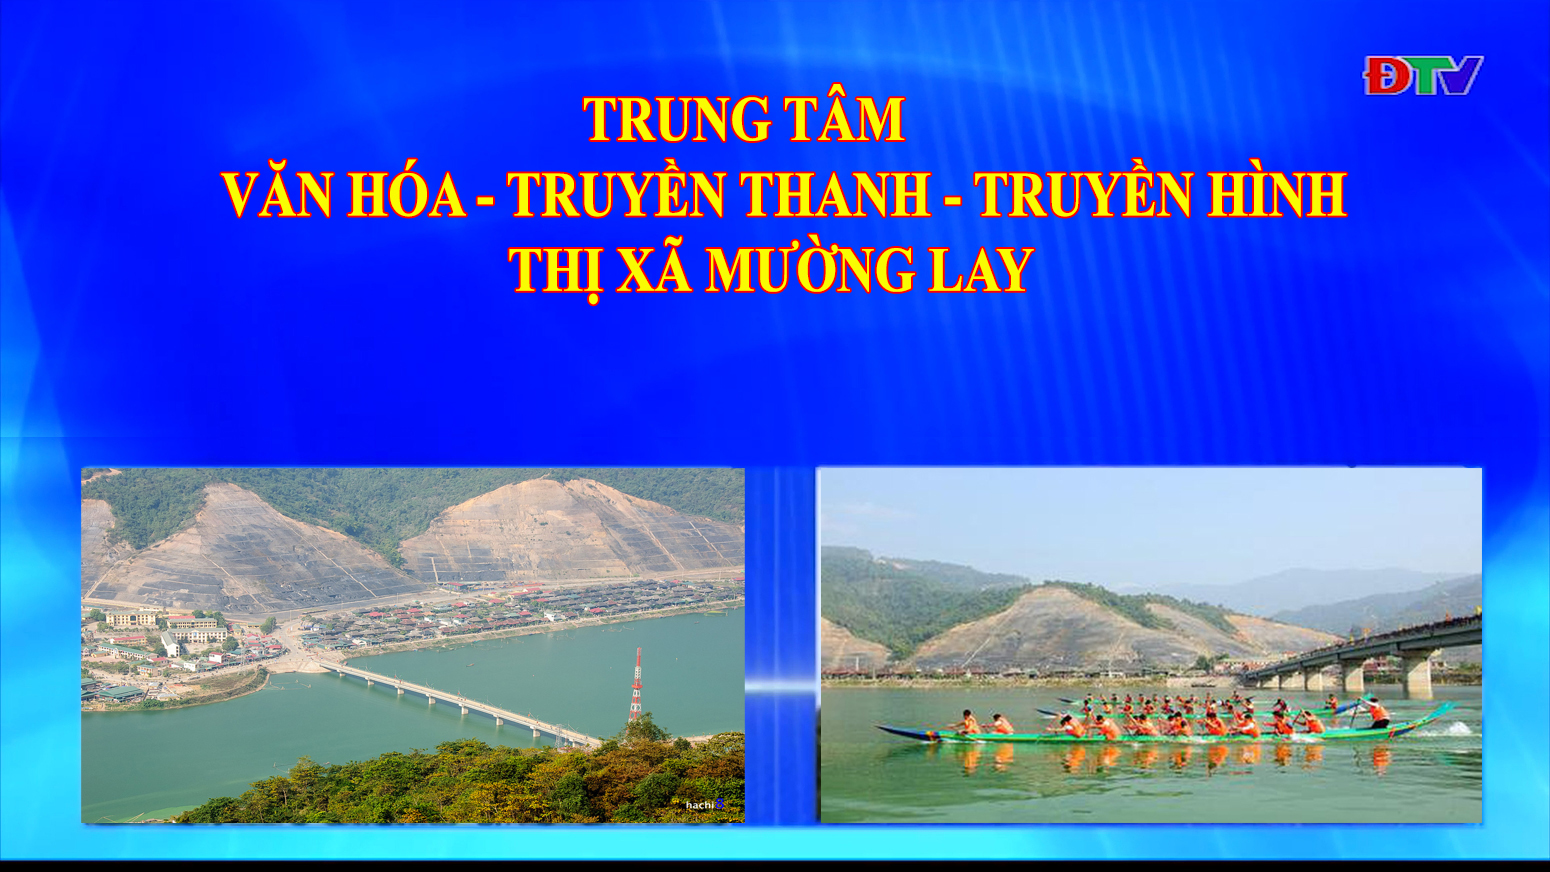 Trung tâm VH-TTTH thị xã Mường Lay (Ngày 13-11-2020)